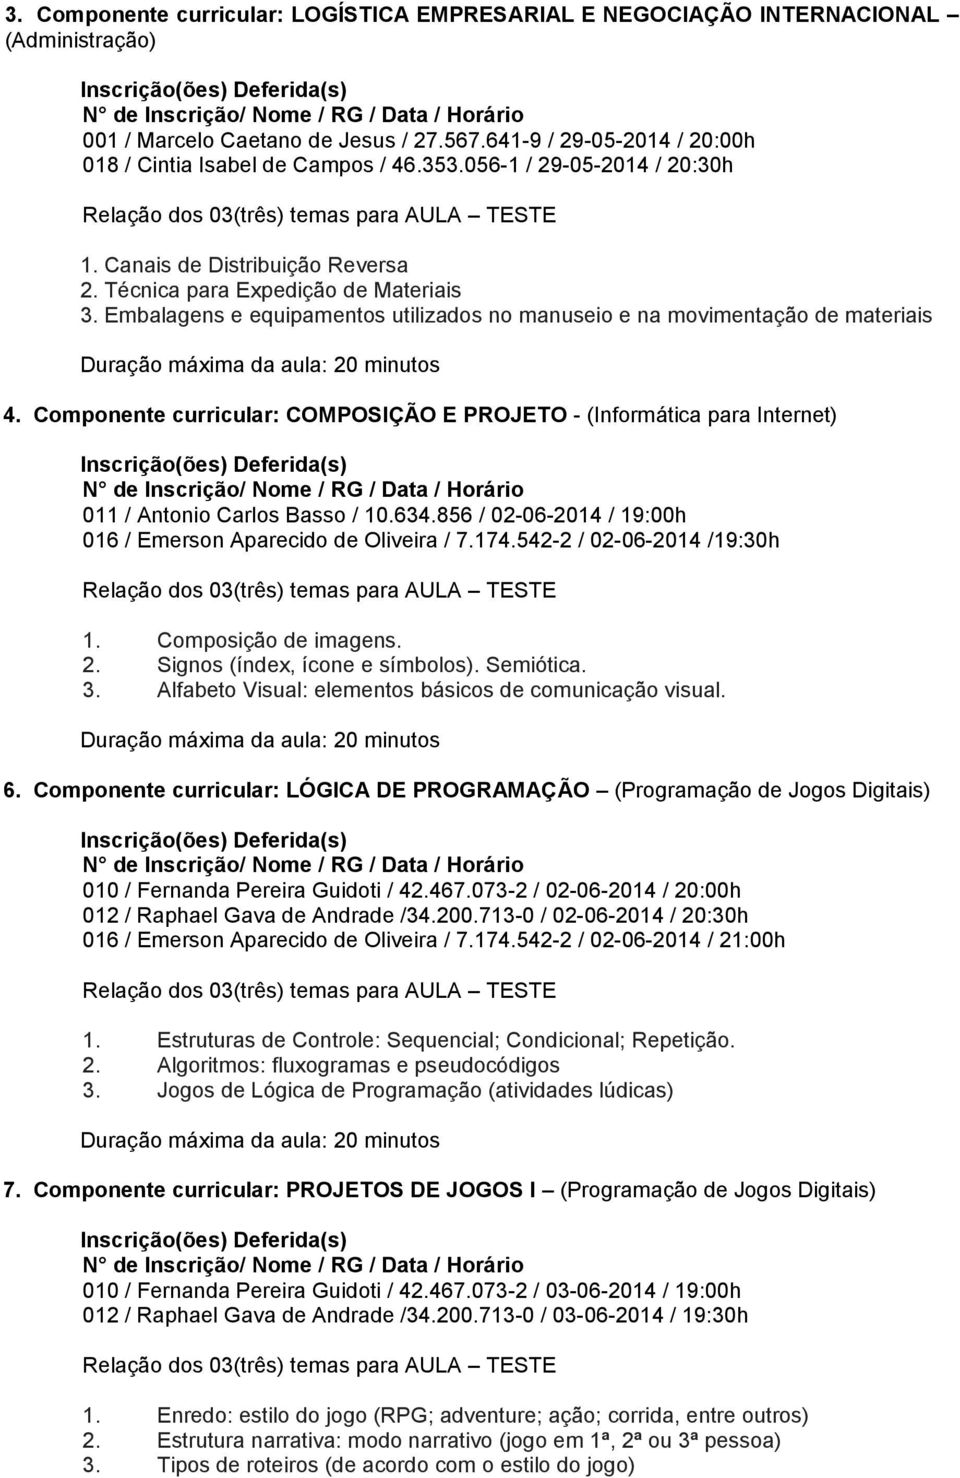 Componente curricular: COMPOSIÇÃO E PROJETO - (Informática para Internet) 011 / Antonio Carlos Basso / 10.634.856 / 02-06-2014 / 19:00h 016 / Emerson Aparecido de Oliveira / 7.174.